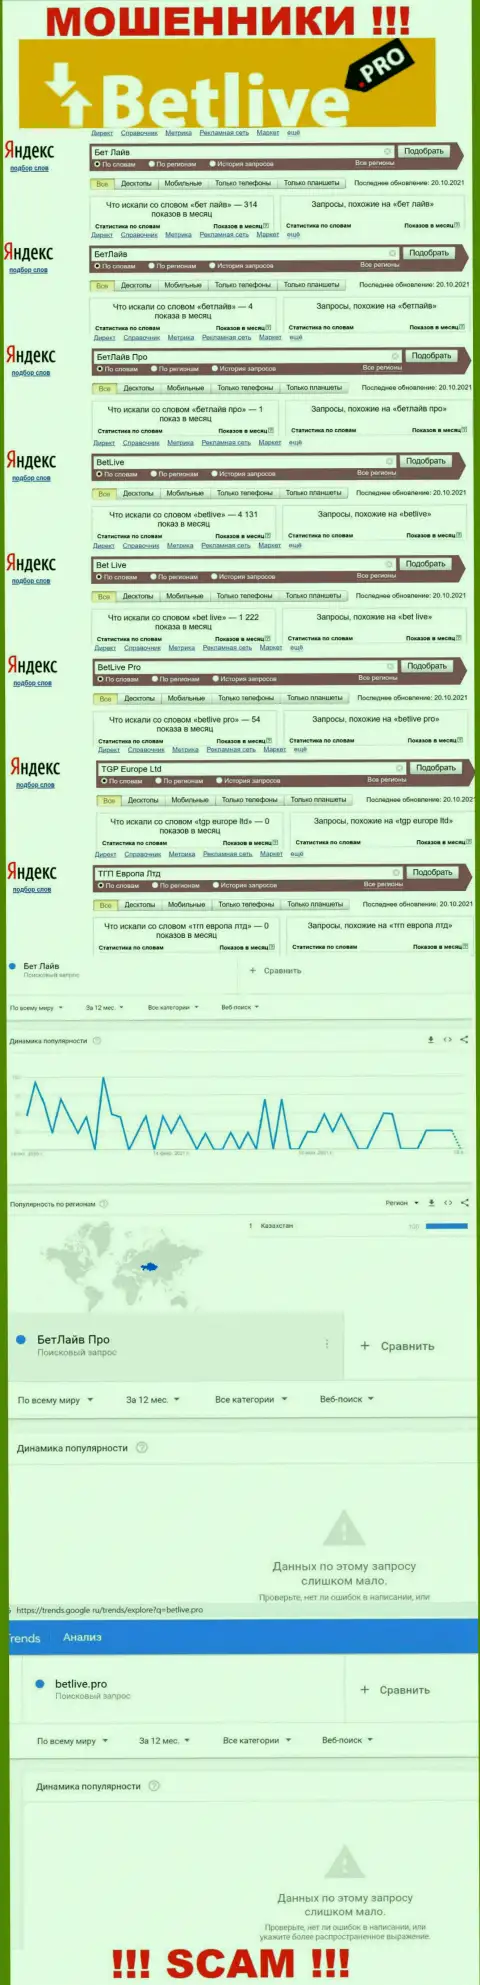 Статистические показатели о запросах в поисковиках сети internet сведений о компании BetLive